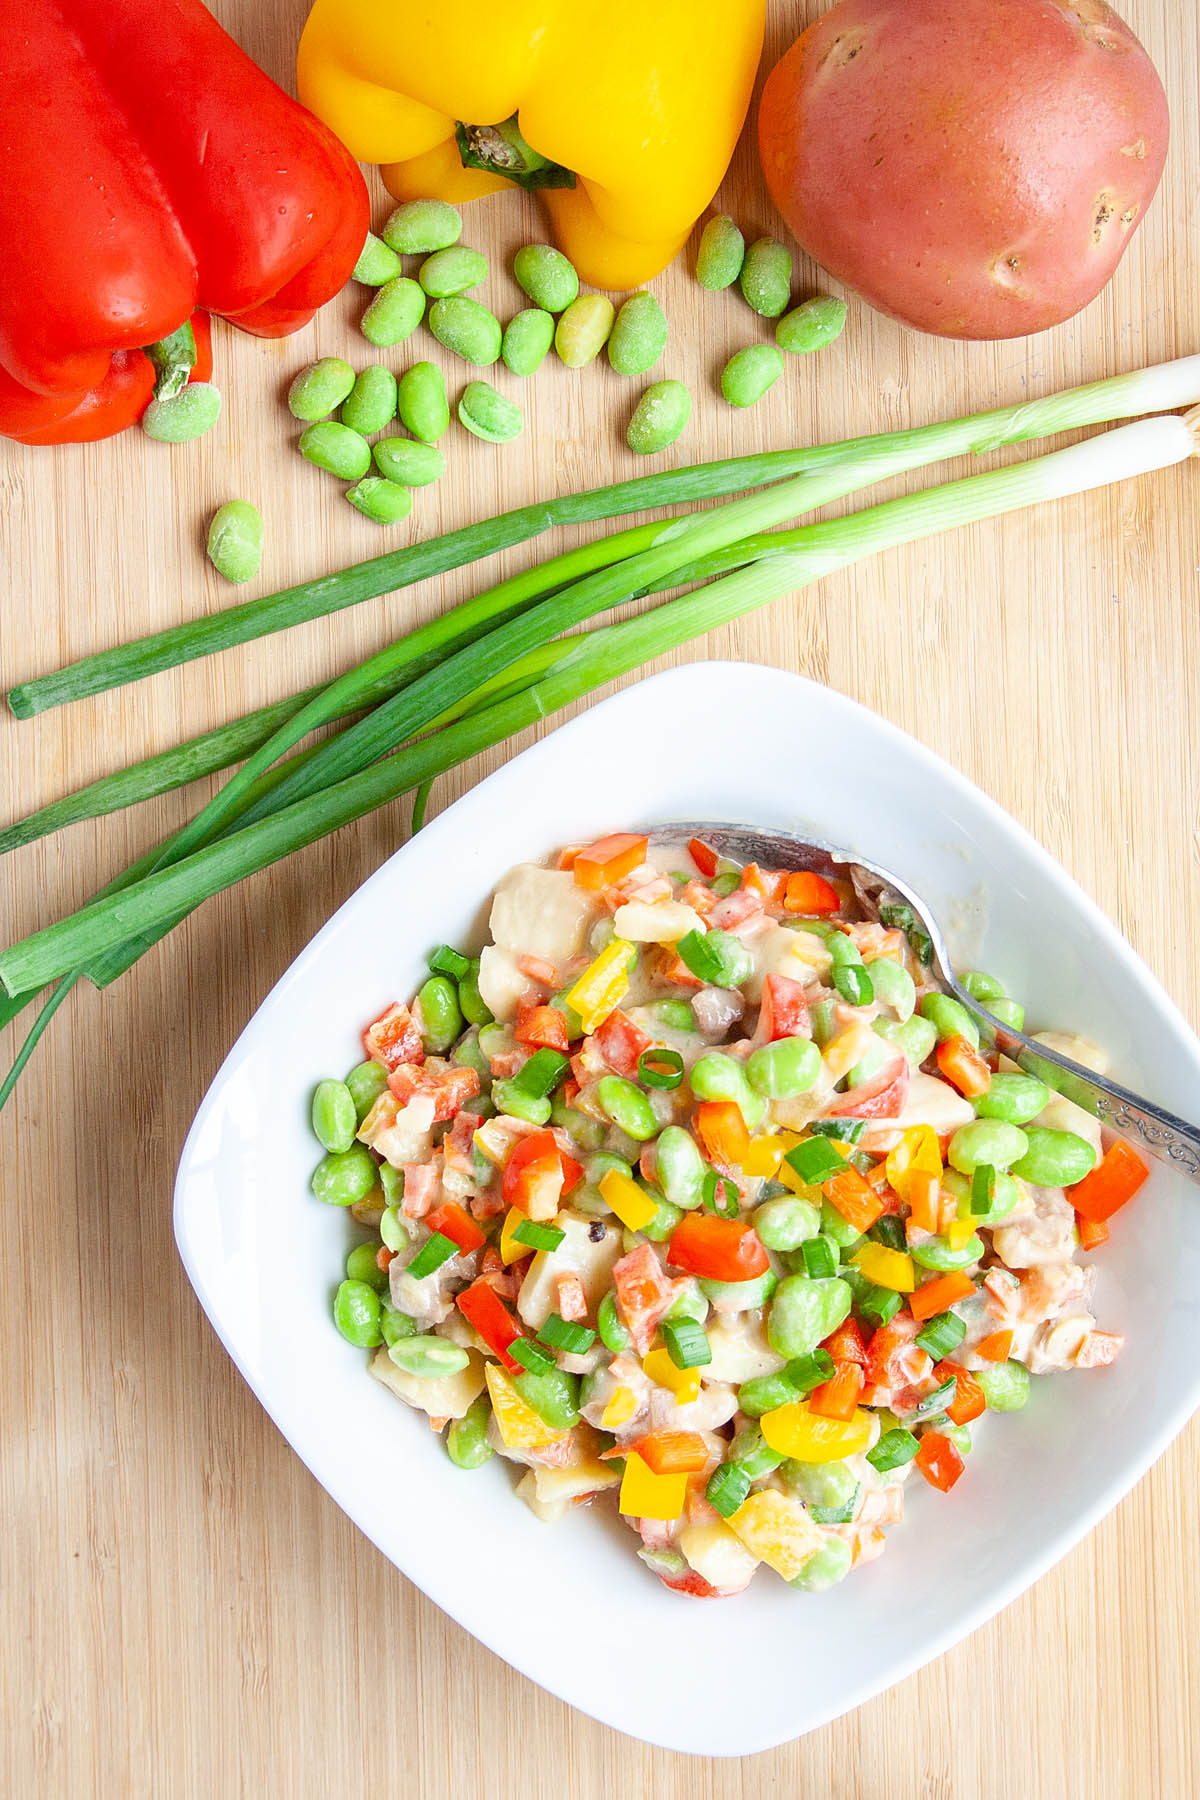 Edamame Salad on cutting board with veggies.